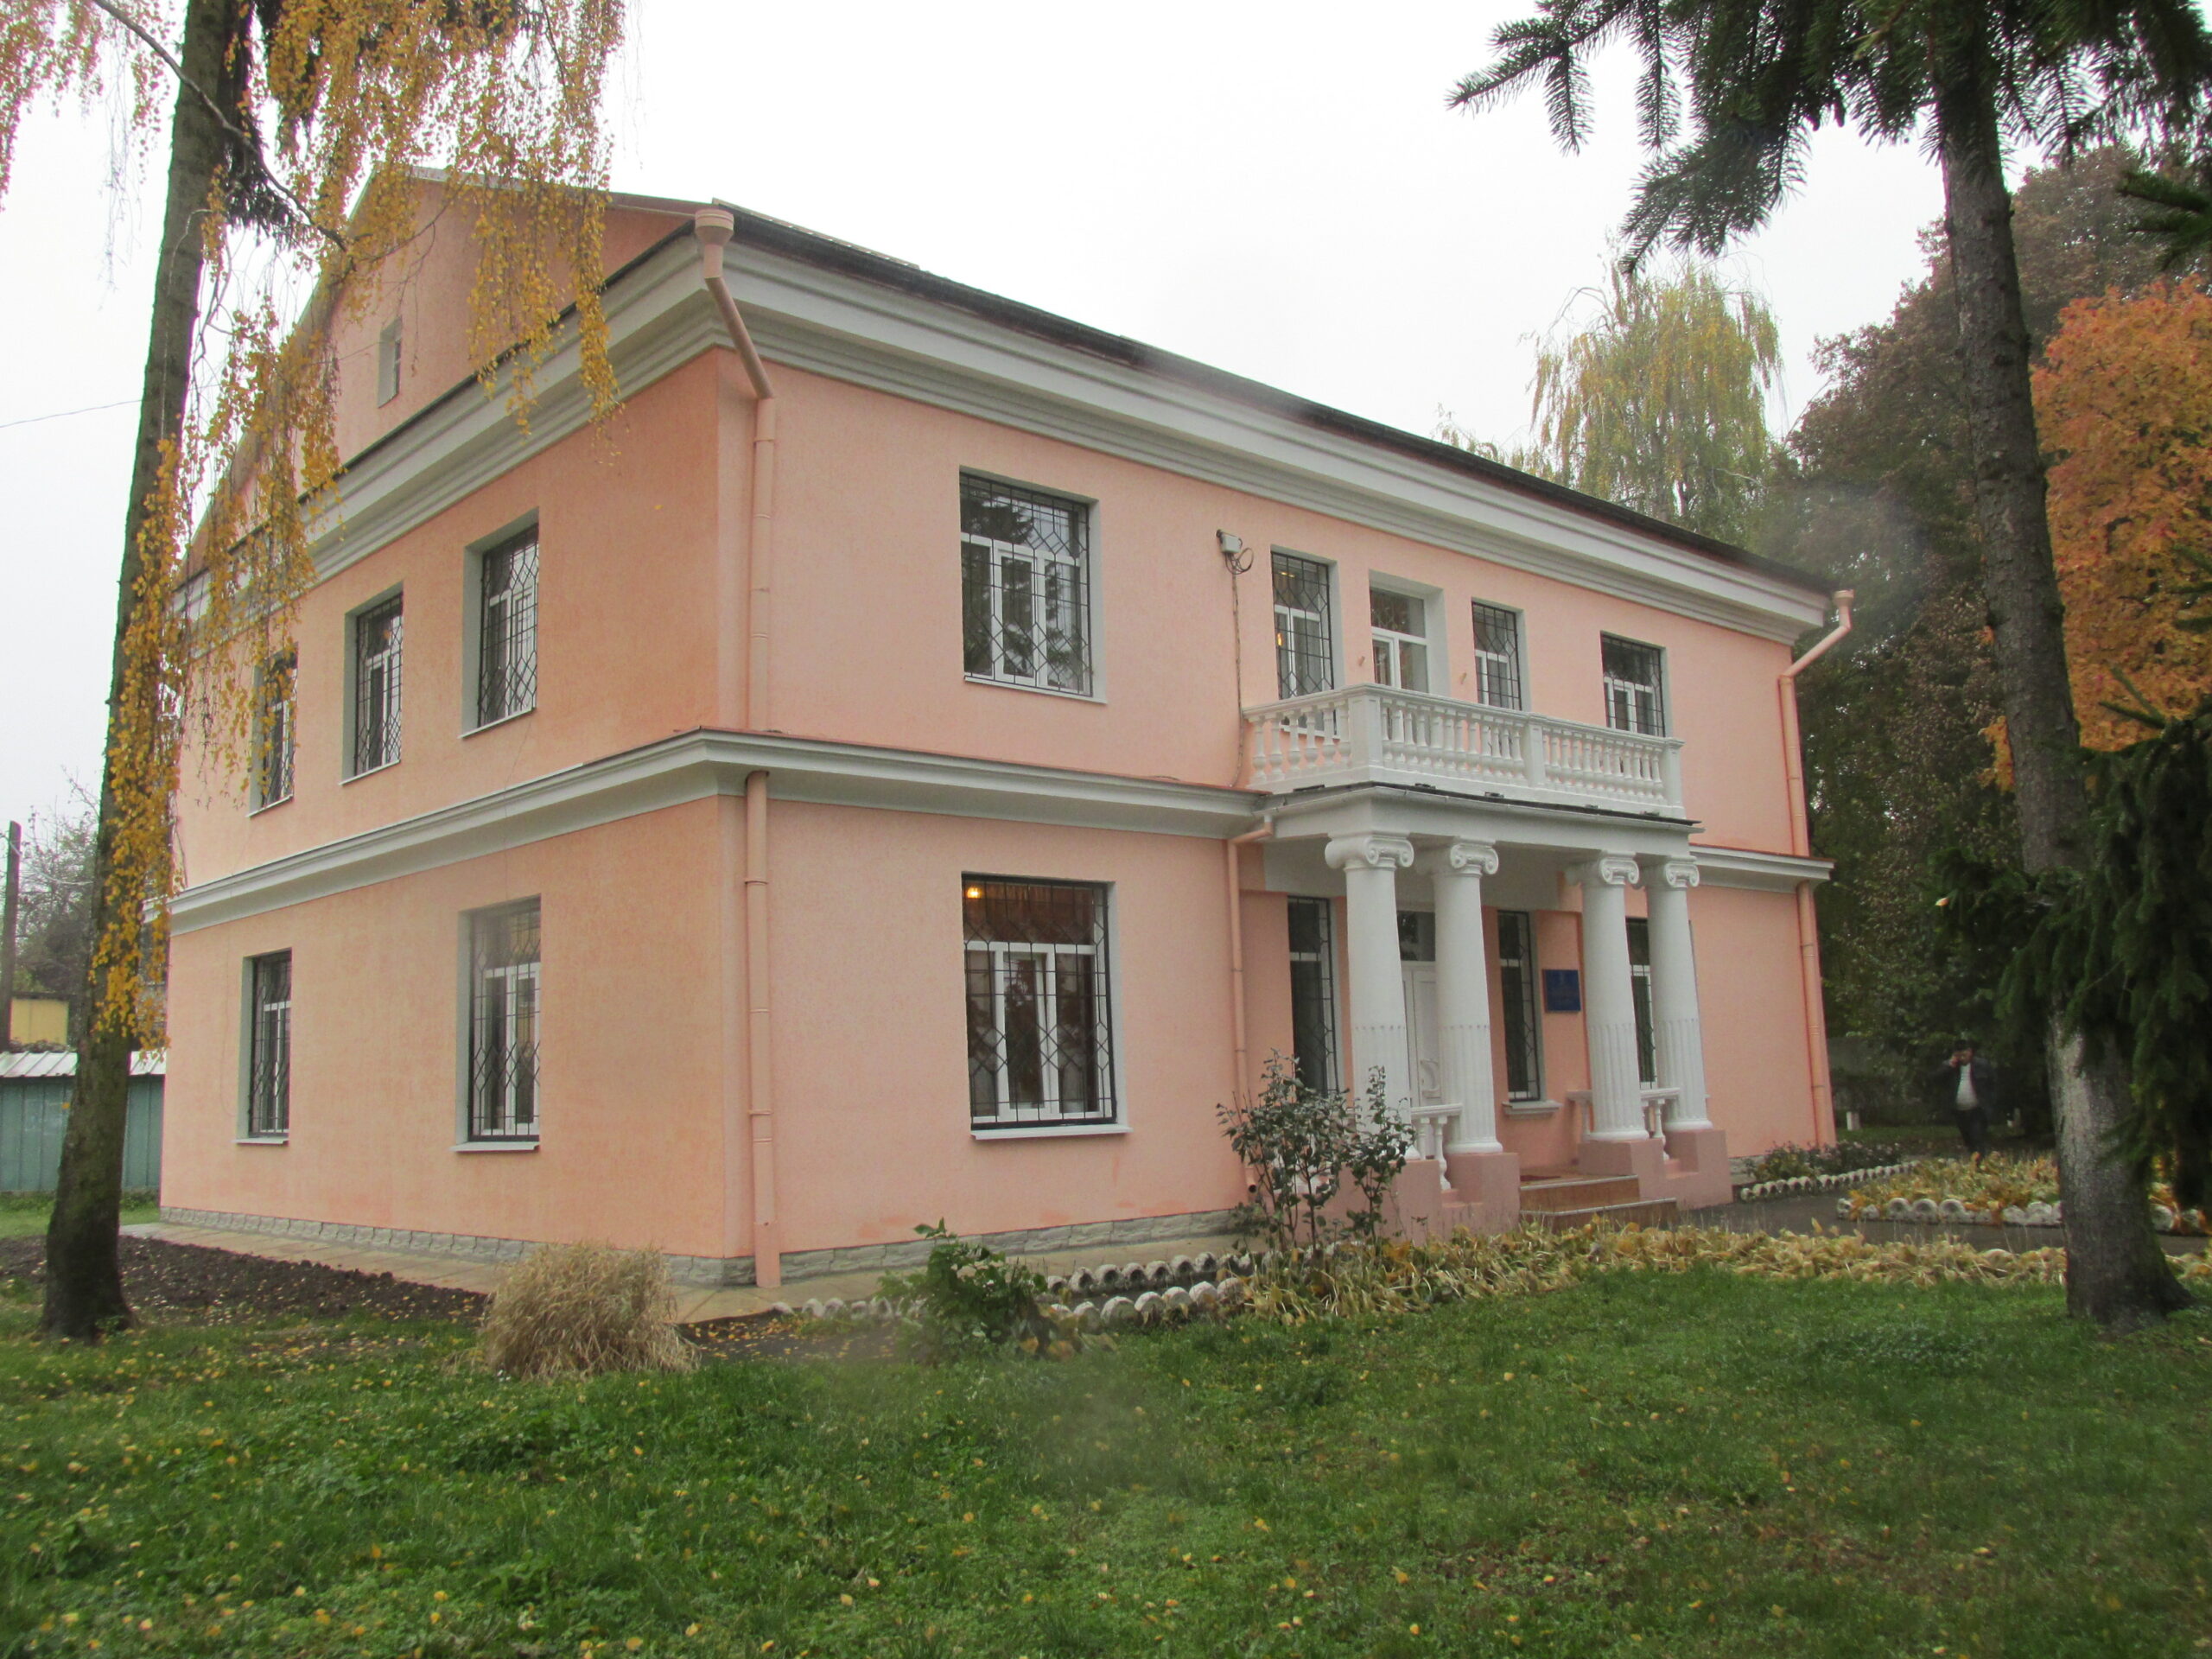 House of Volyn Voivode, Lutsk